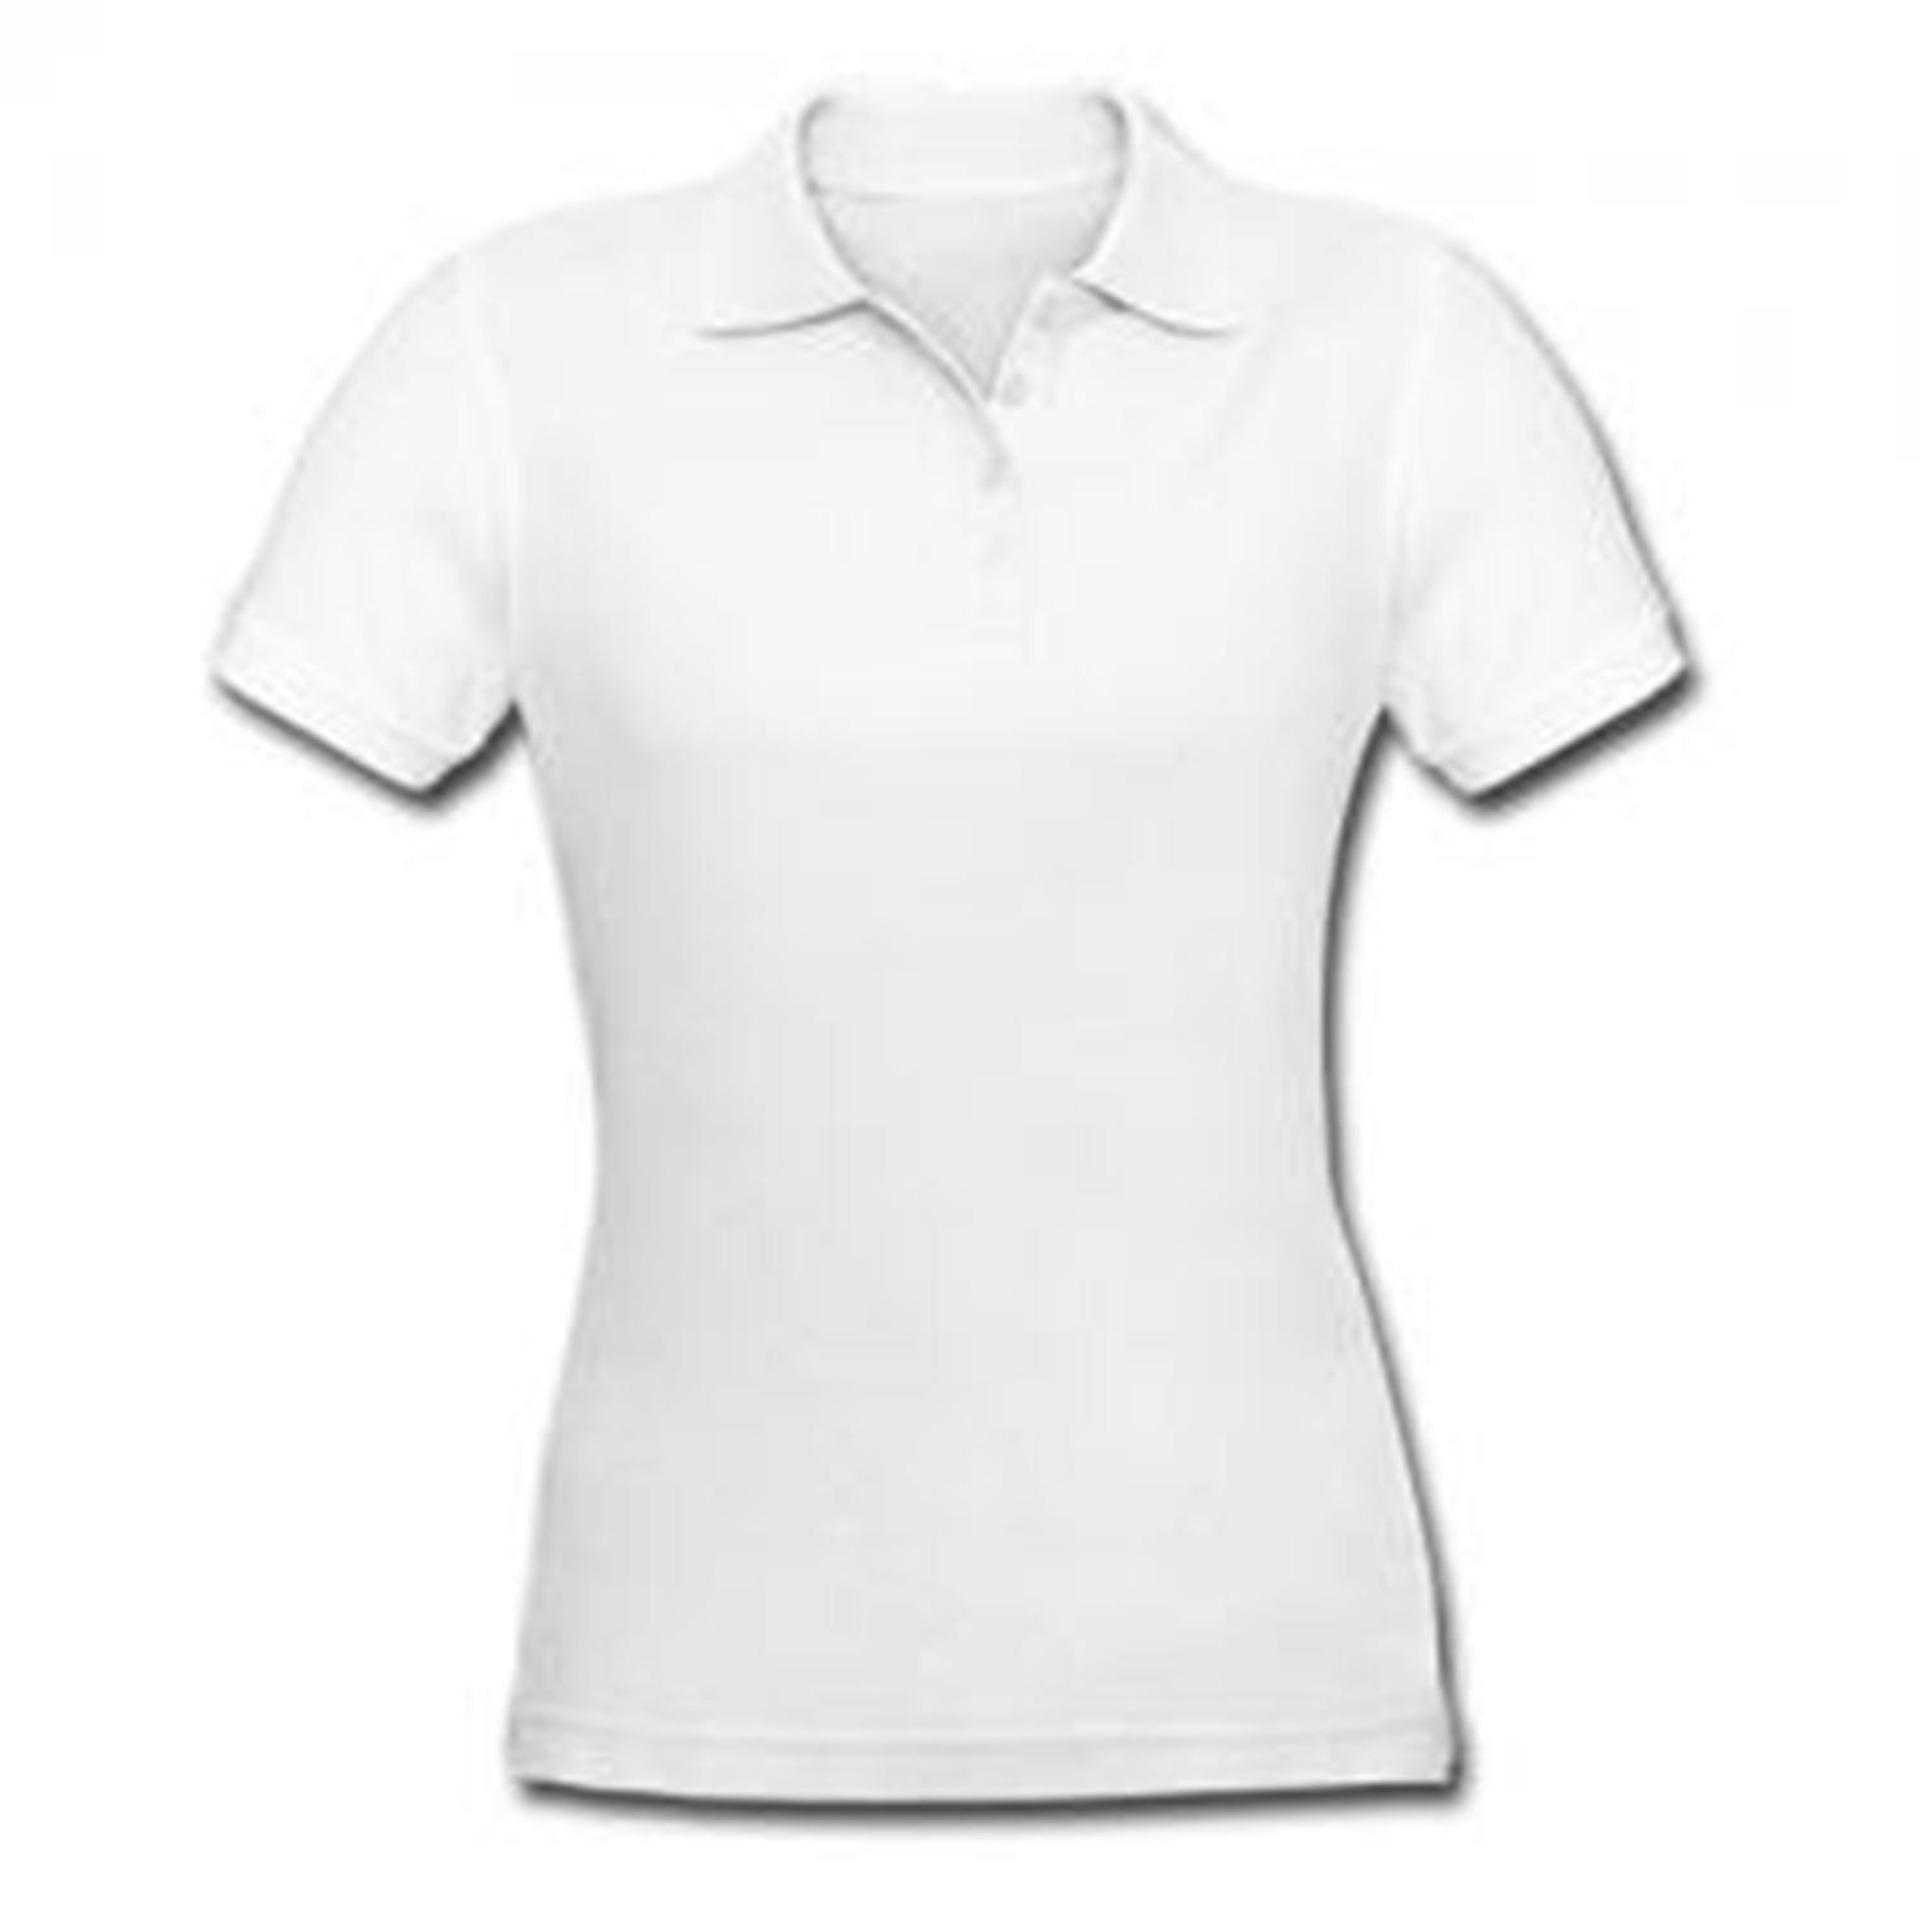 Download 39+ Baju Polos Putih Desain, Inspirasi Terpopuler!